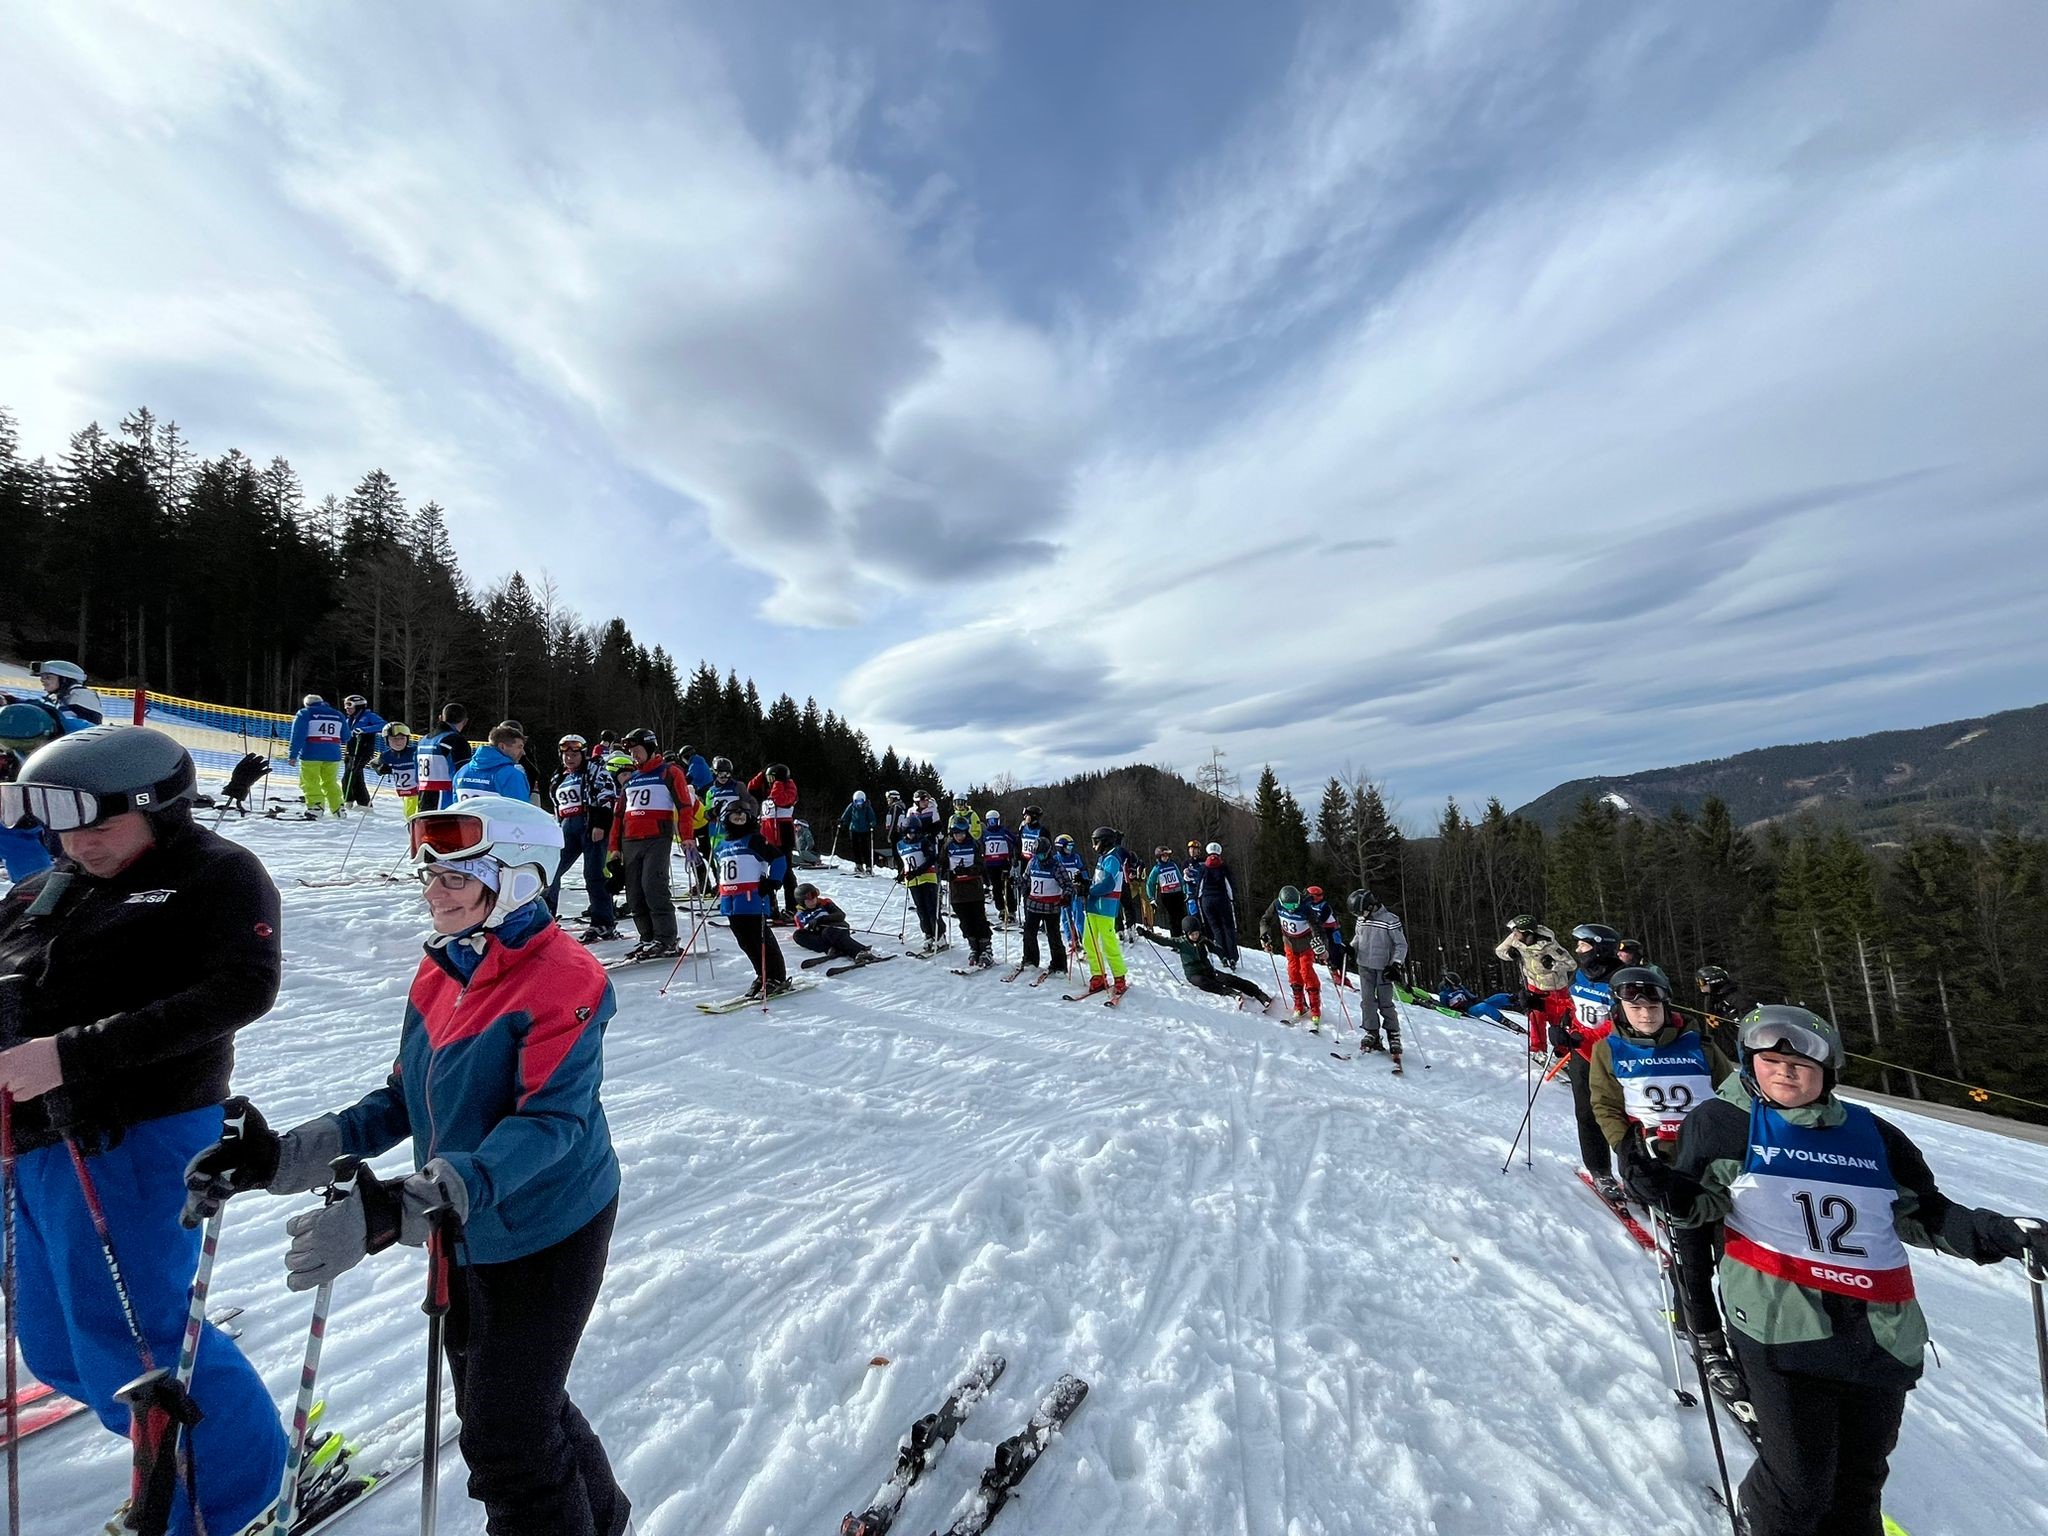 Bezirksski- und Snowboardmeisterschaften in Lackenhof